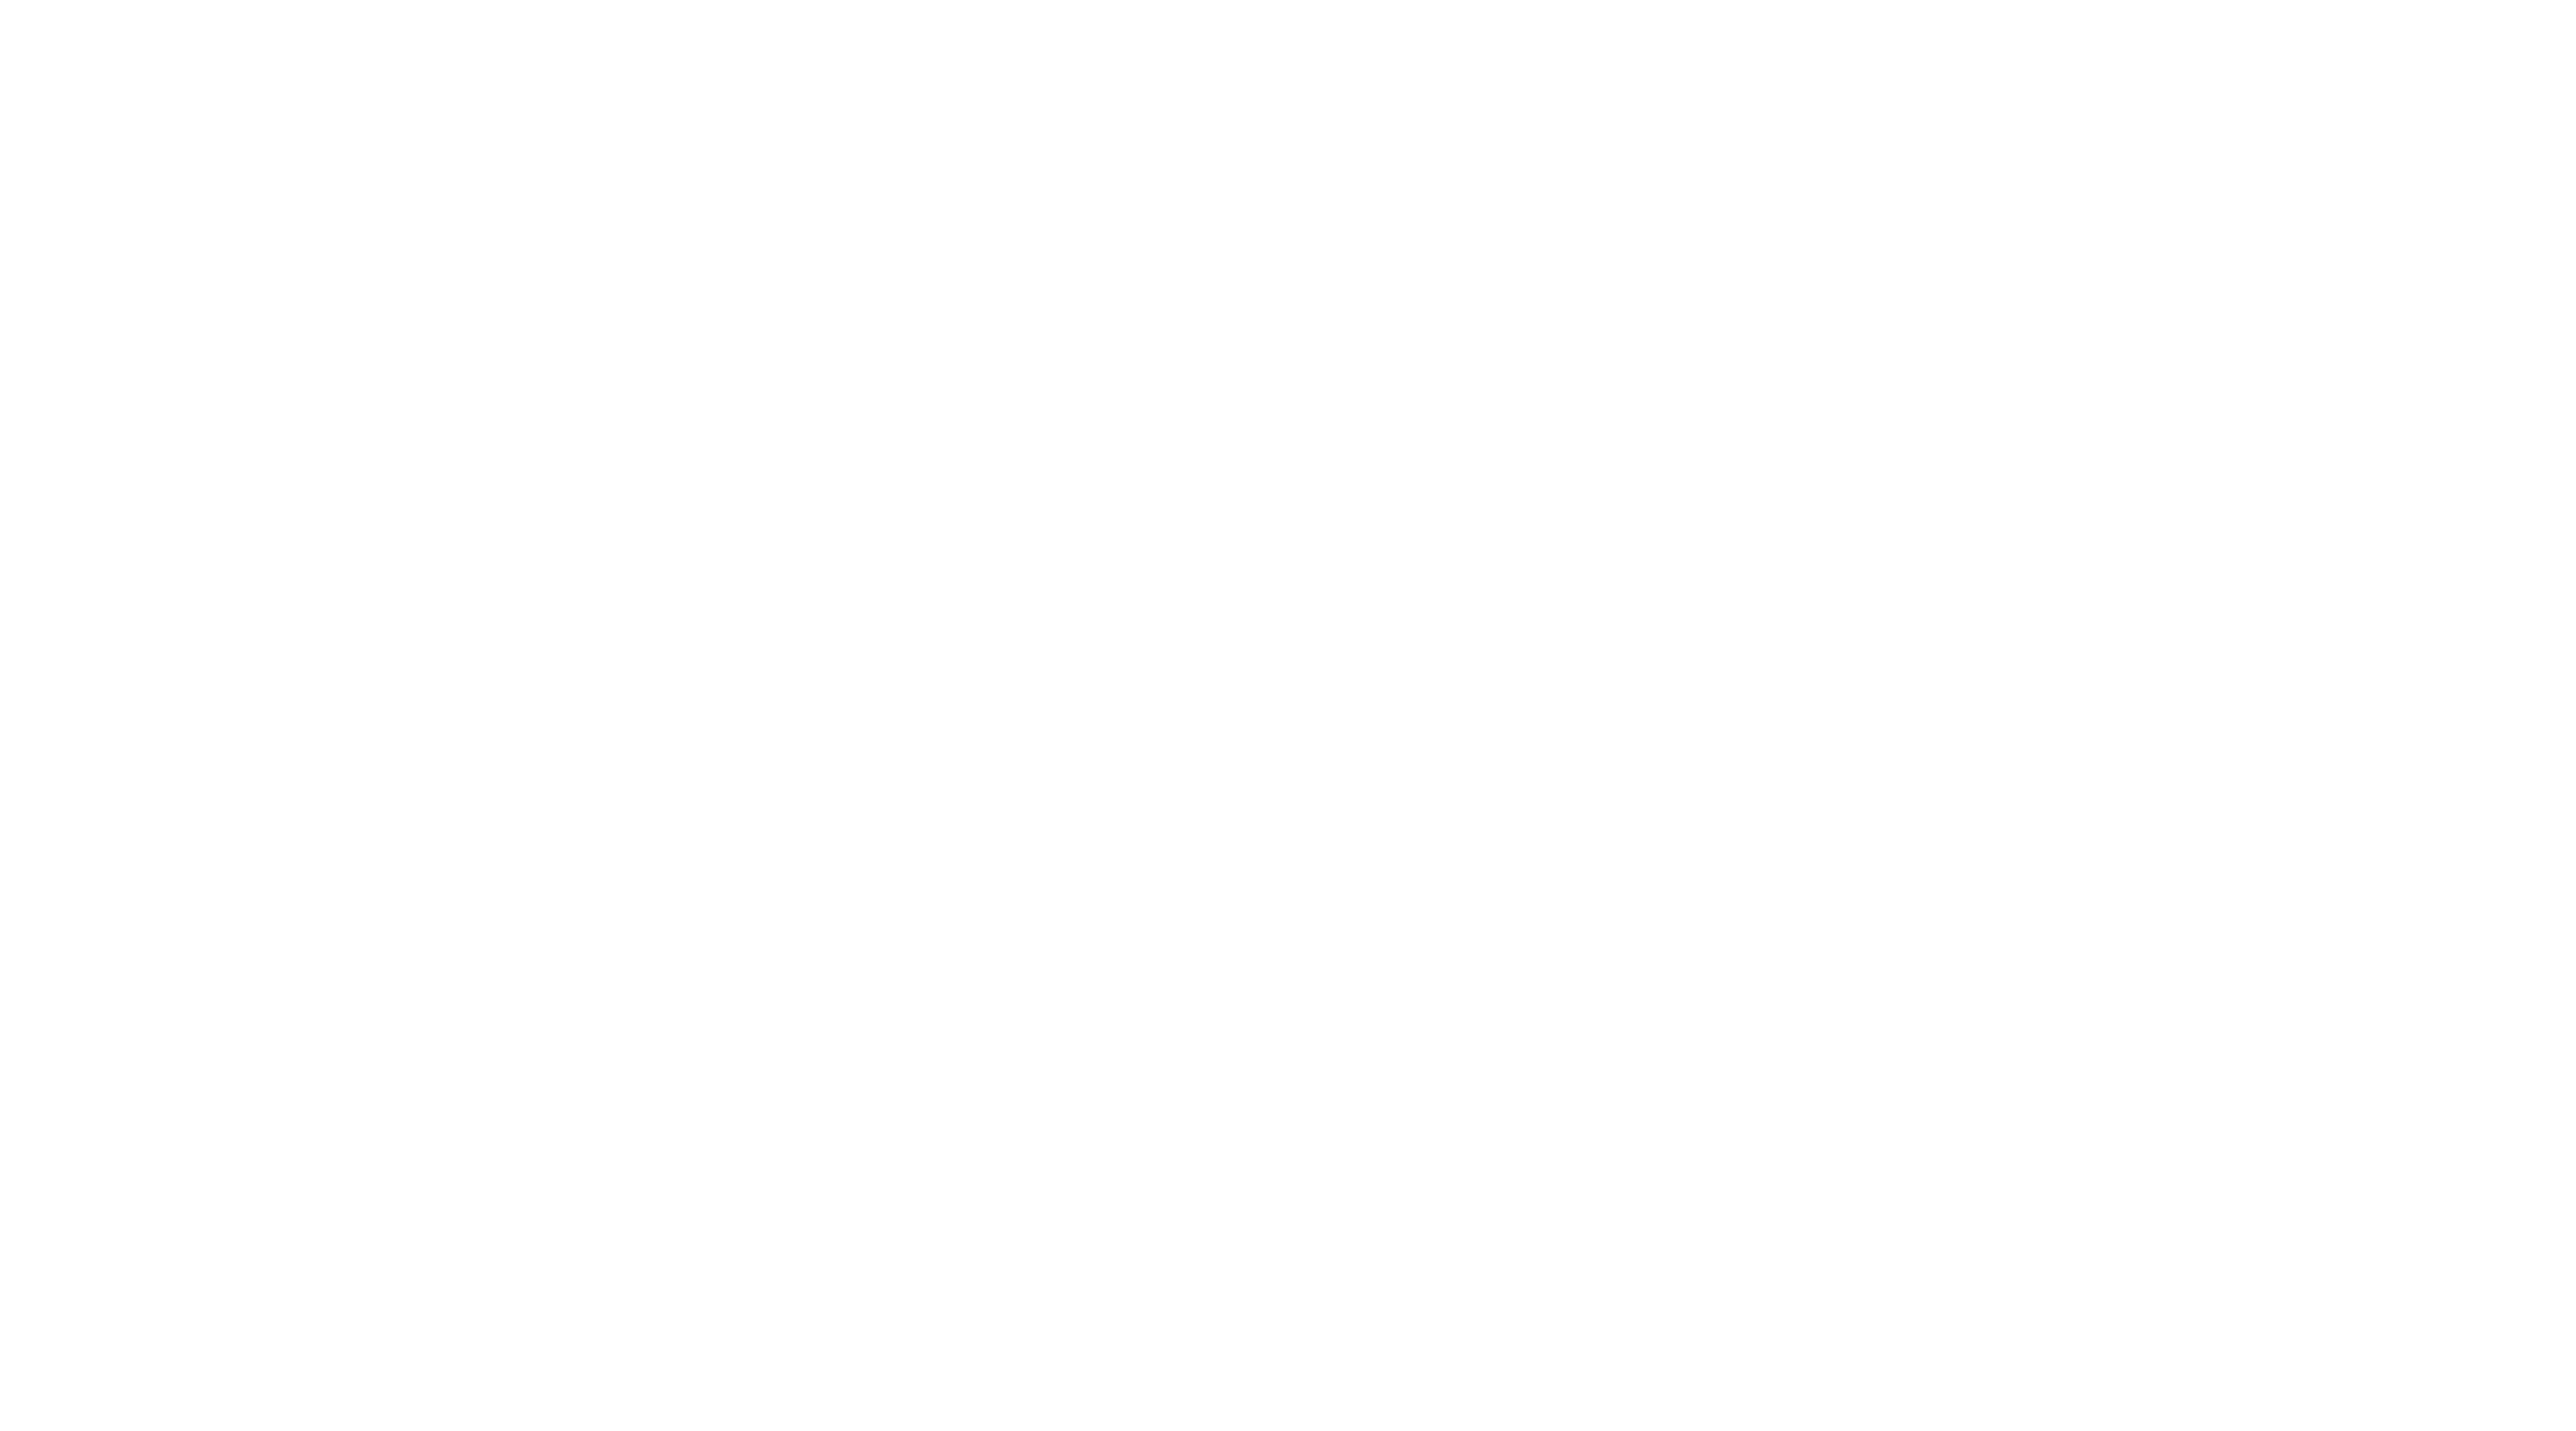 Logo Esprit Média avec slogan "L'agence créative par nature"